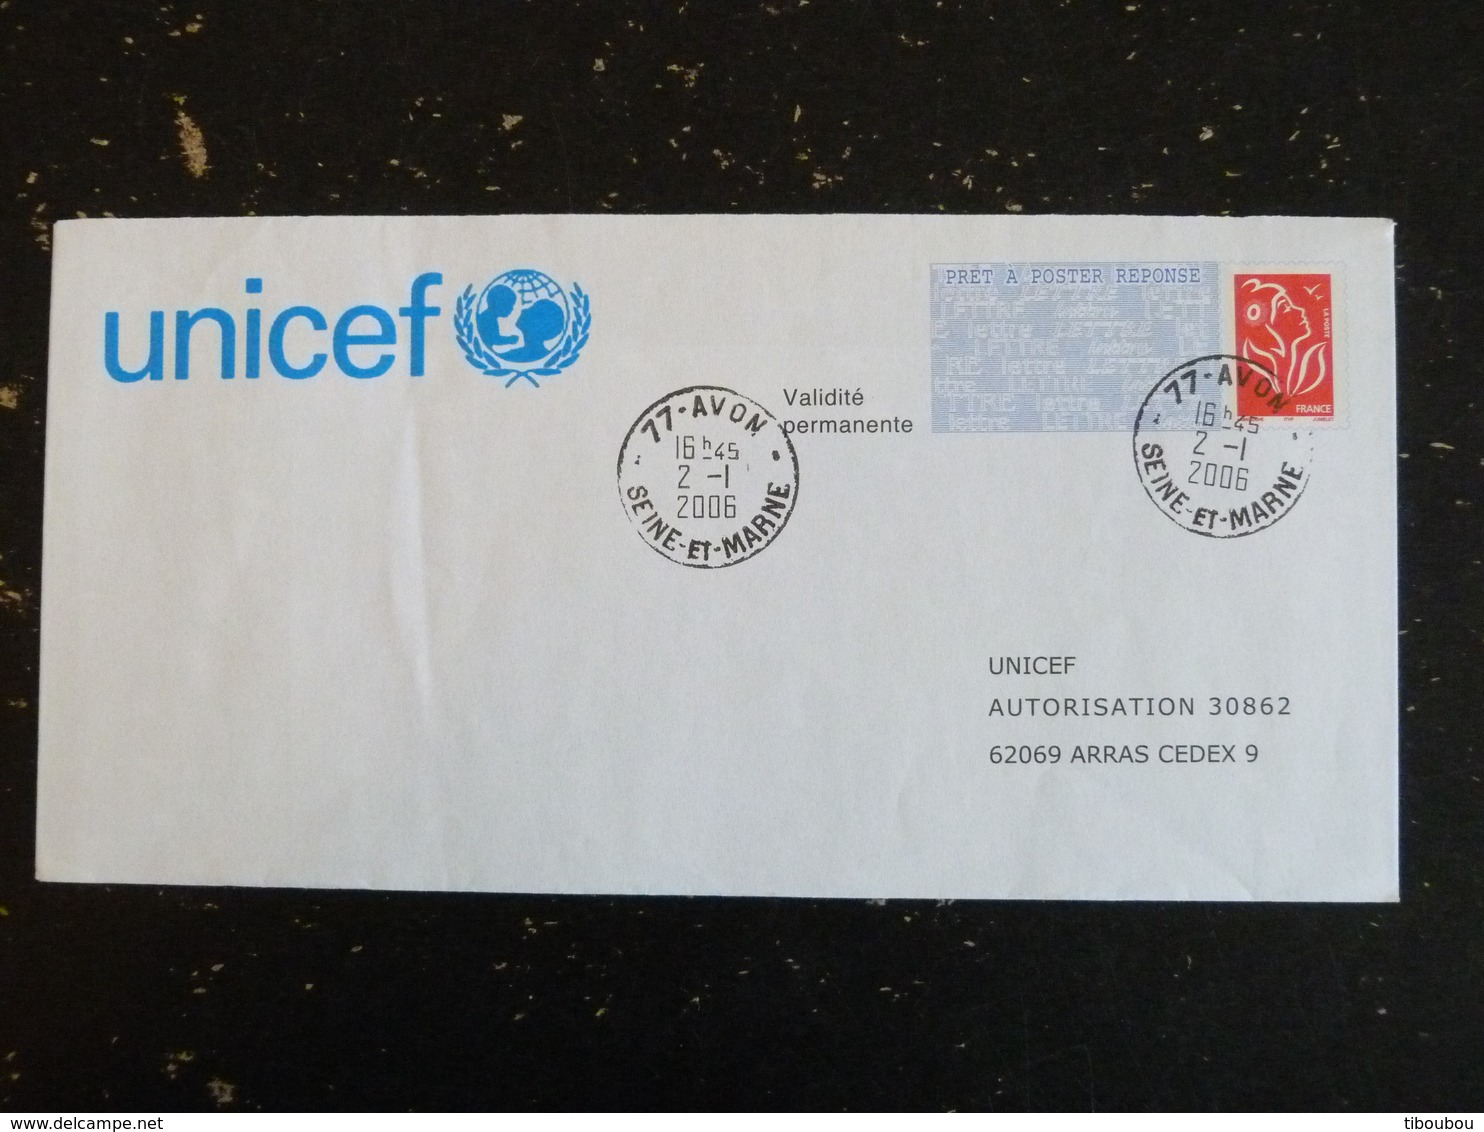 AVON - SEINE ET MARNE - CACHET ROND MANUEL SUR PAP REPONSE LAMOUCHE - UNICEF - Prêts-à-poster: Réponse /Lamouche